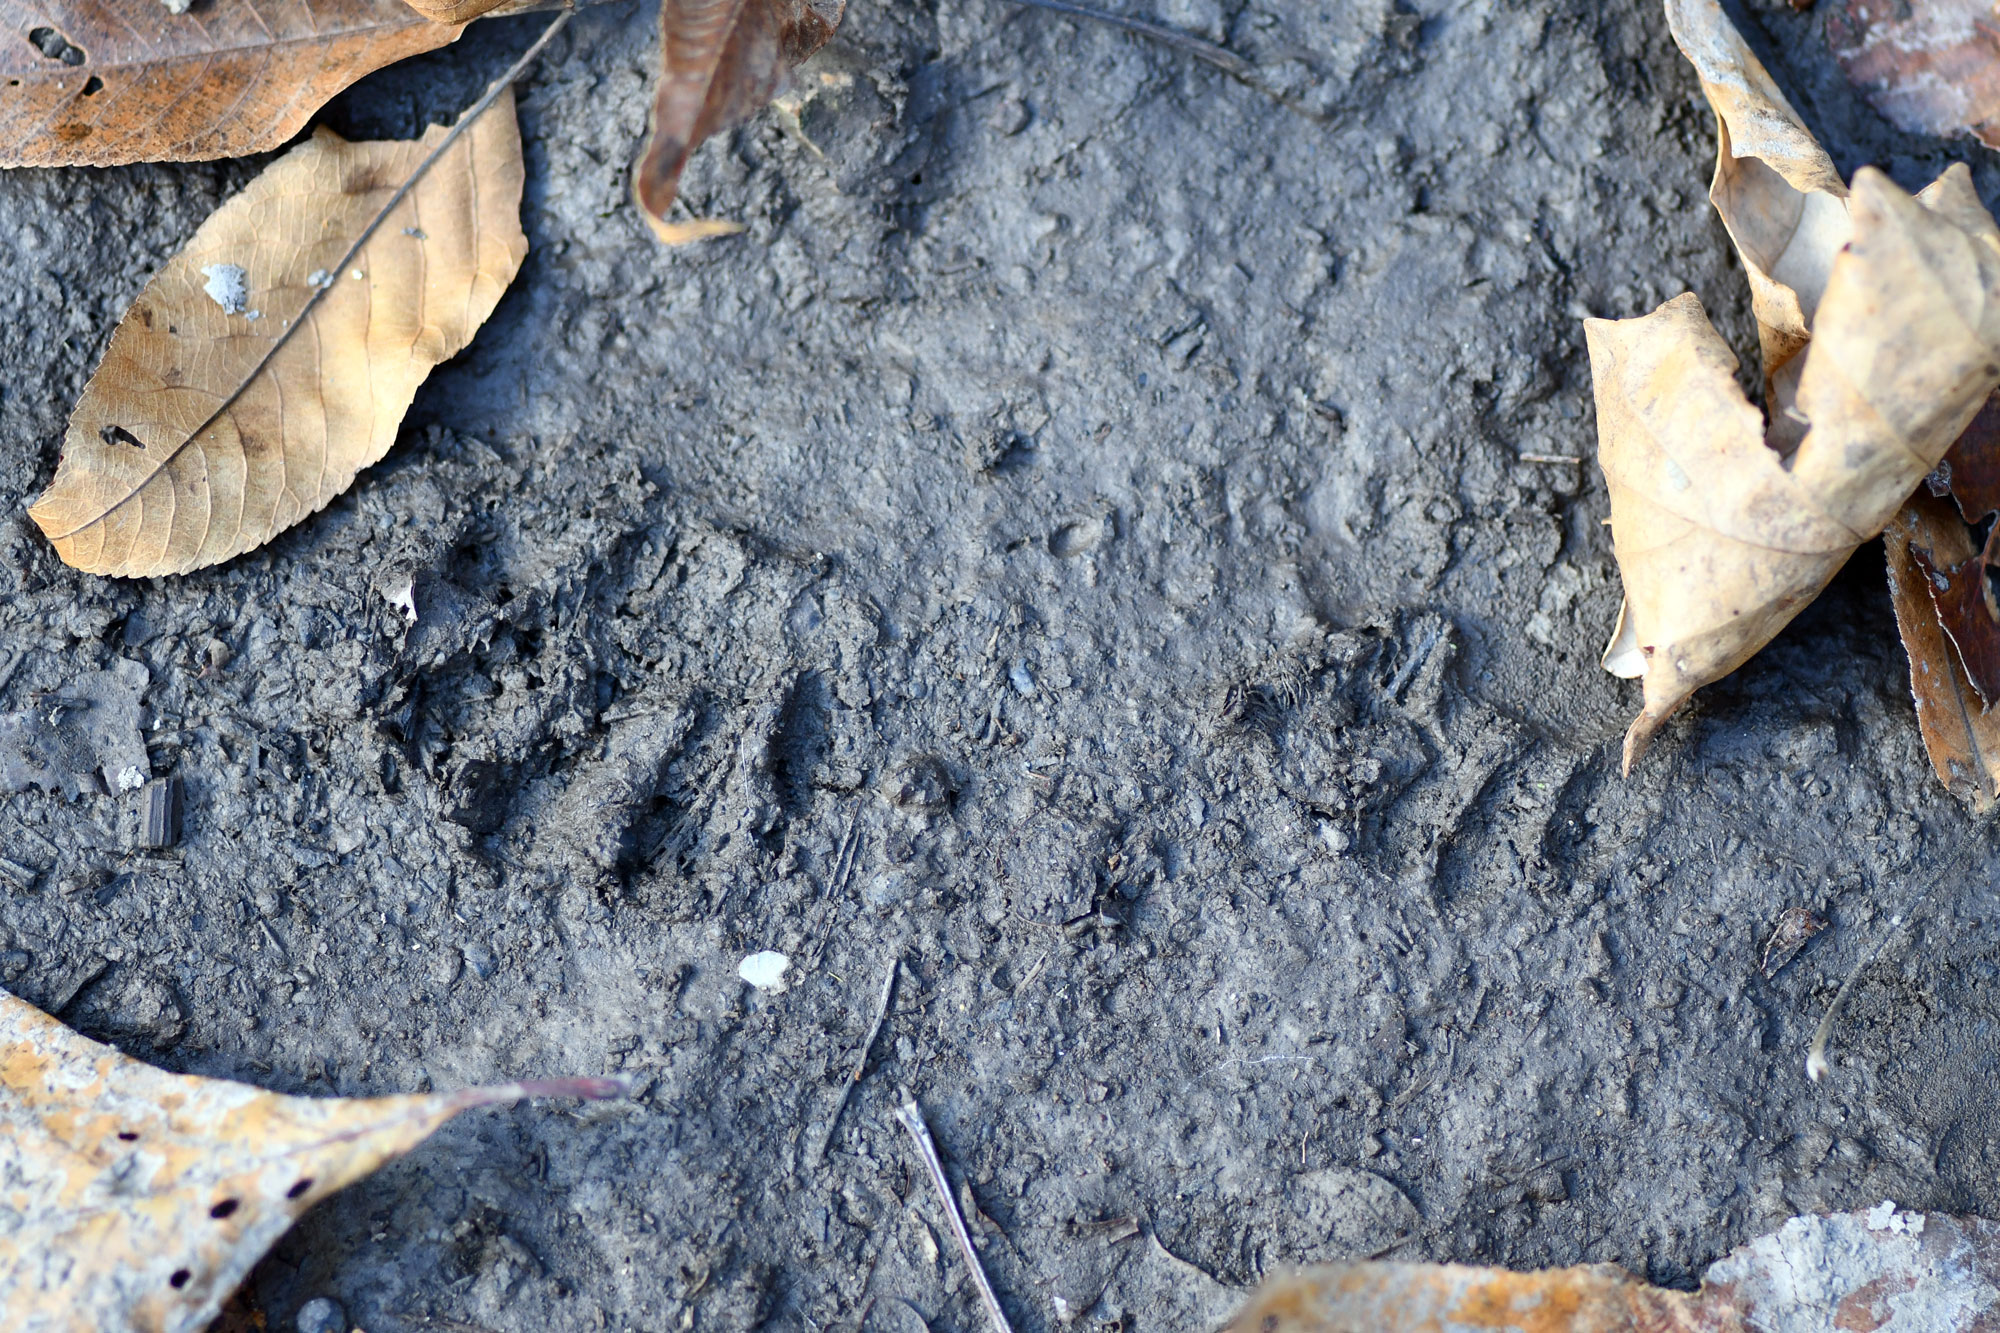 Raccoon tracks in mud.